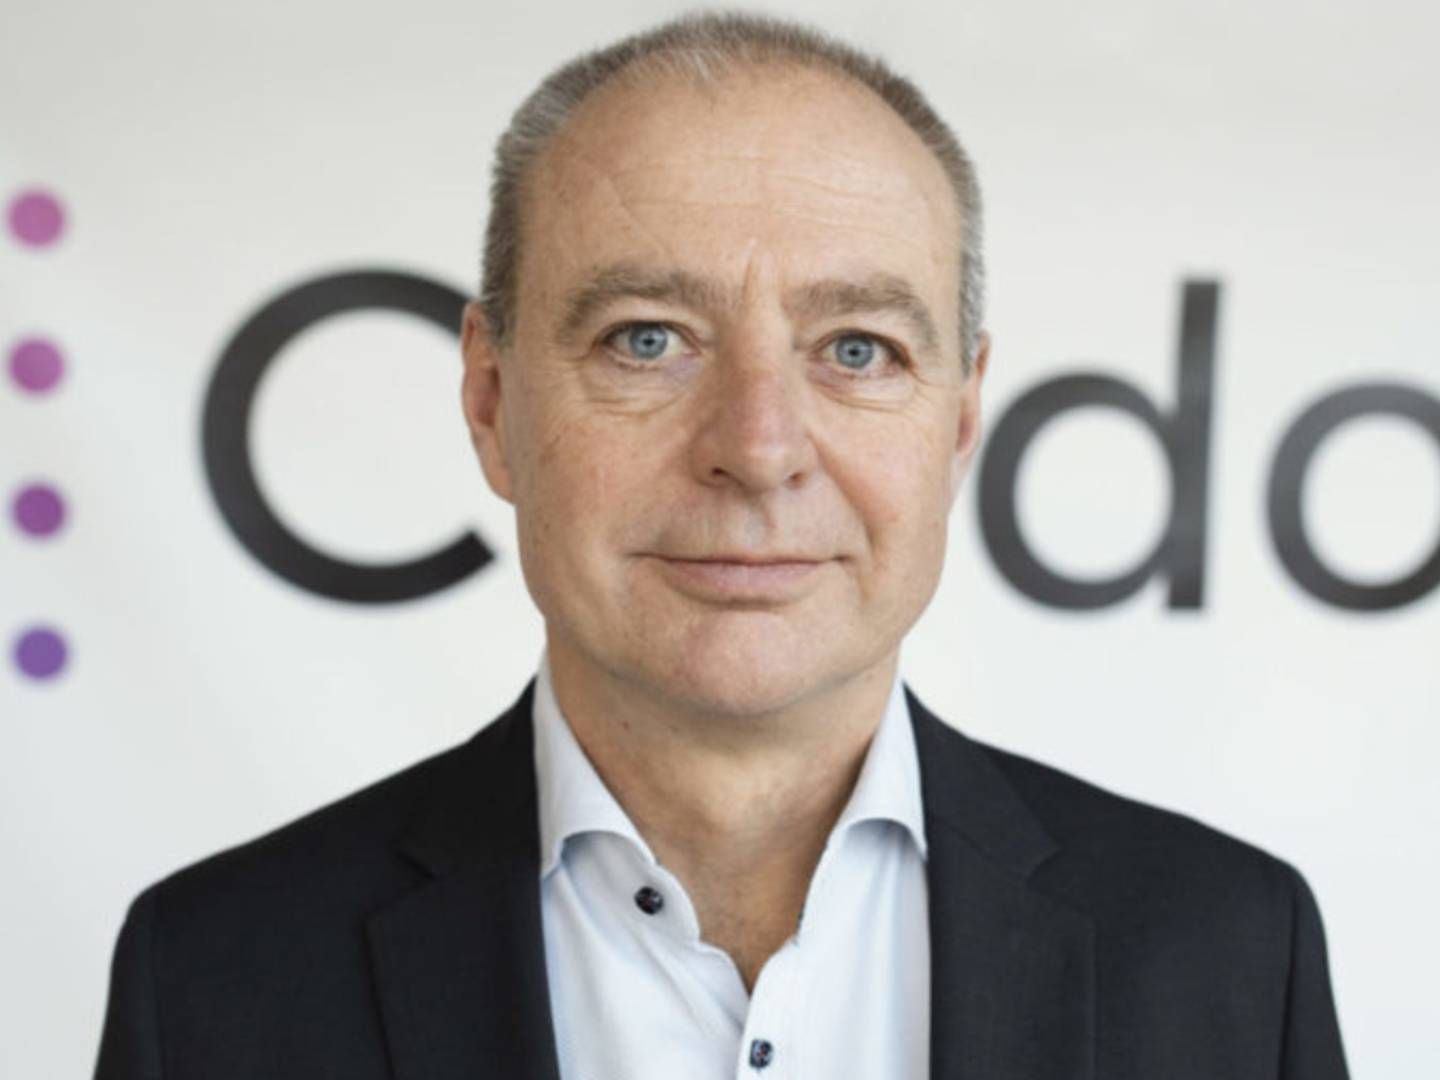 Niels Ebbe Ebbesen har via sit holdingselskab Nescon ApS erhvervet i alt 10 pct. af aktierne i Q-Interline. | Foto: Cludo